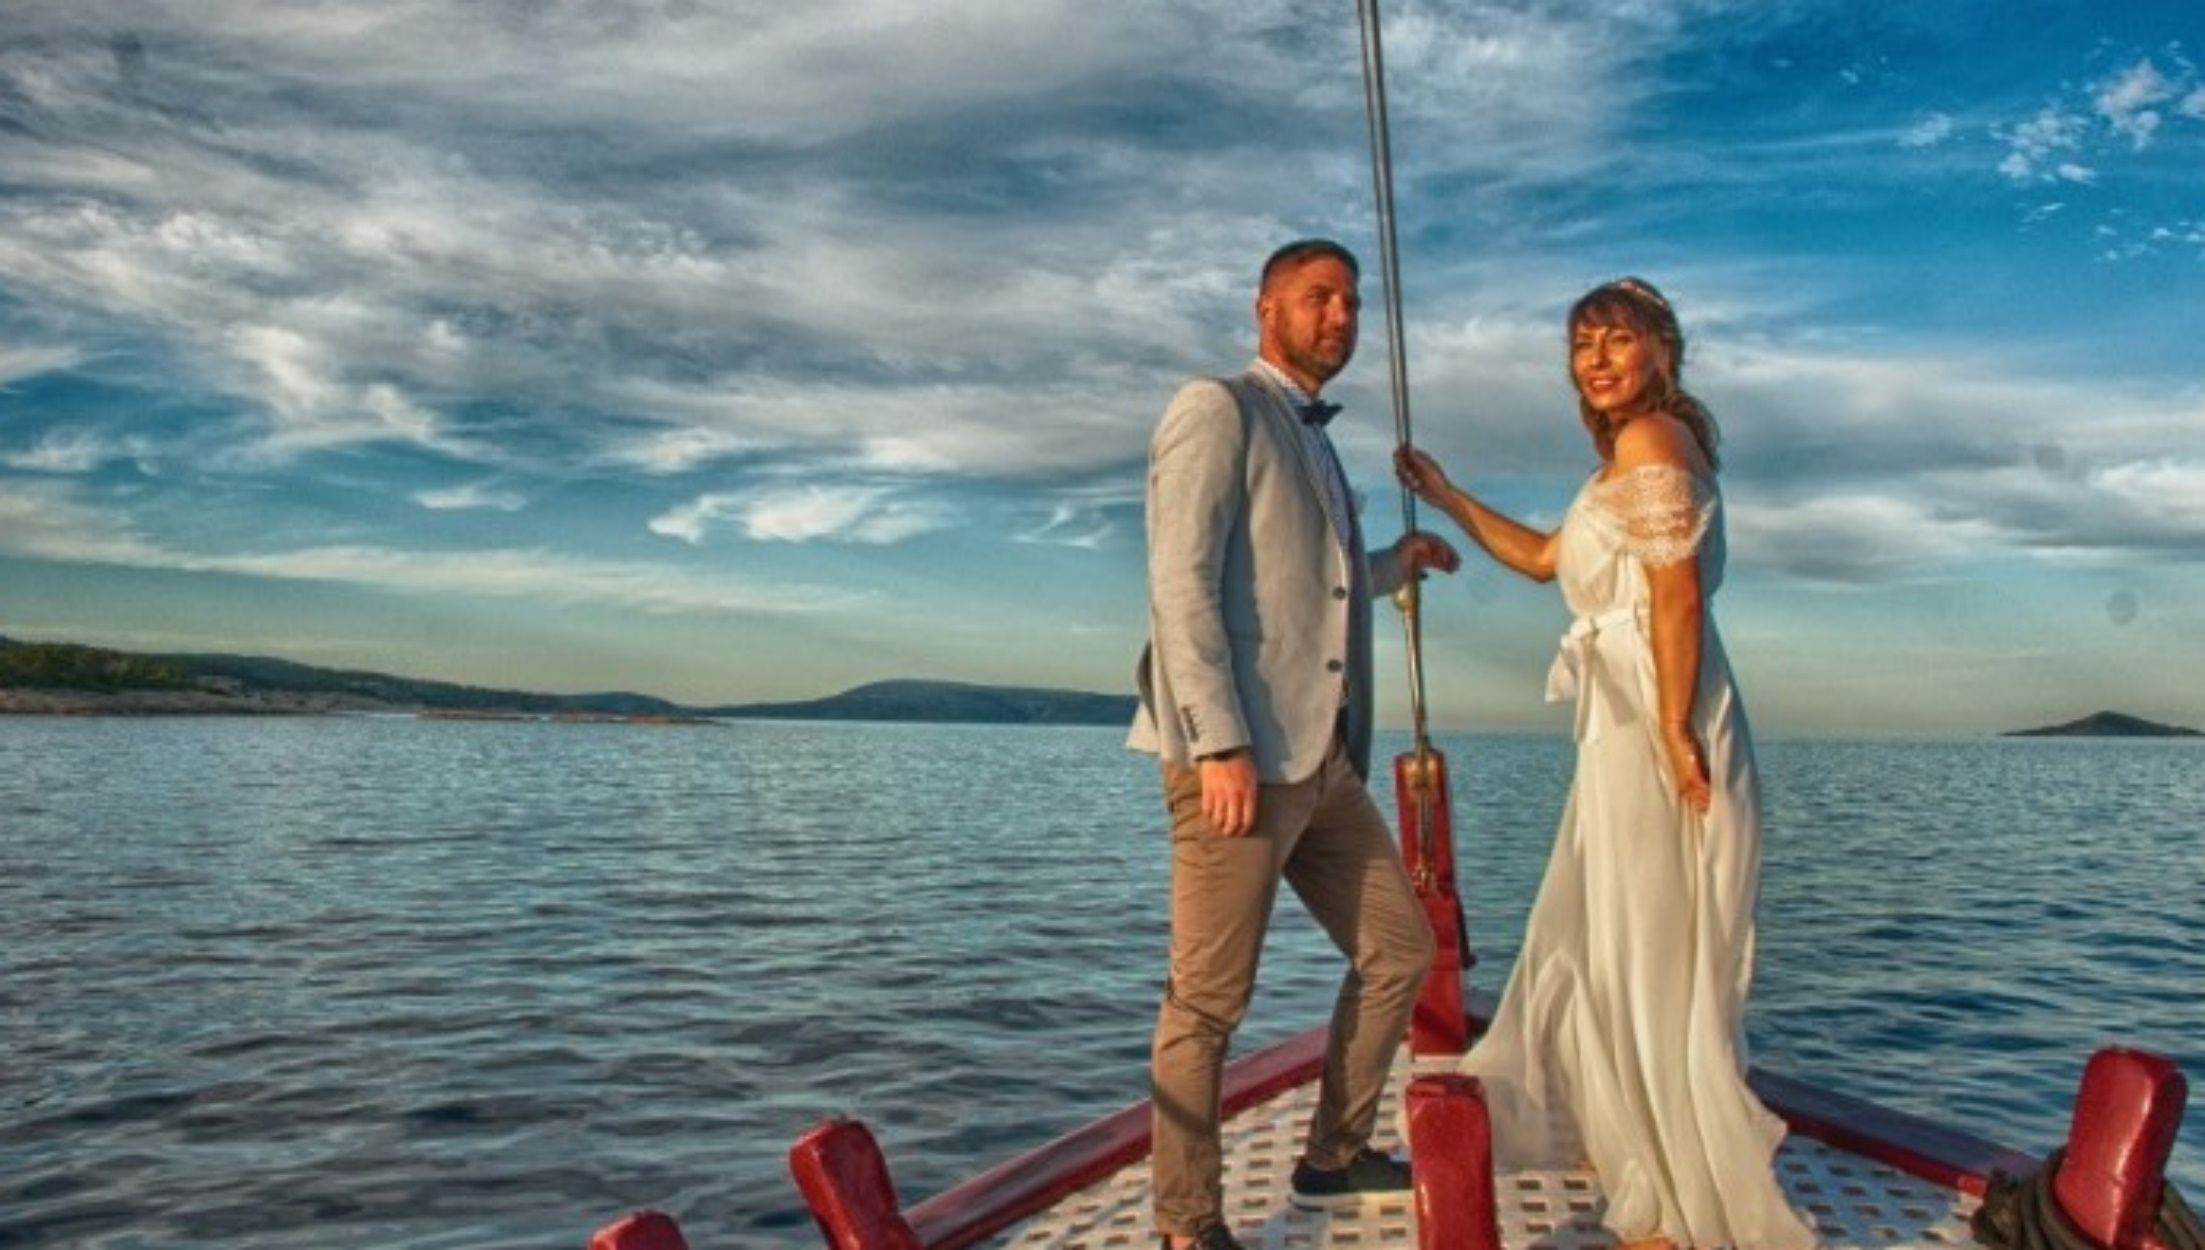 Αλόννησος: Ο γάμος που έγινε viral – Η νύφη, ο γαμπρός και η «Γοργόνα»